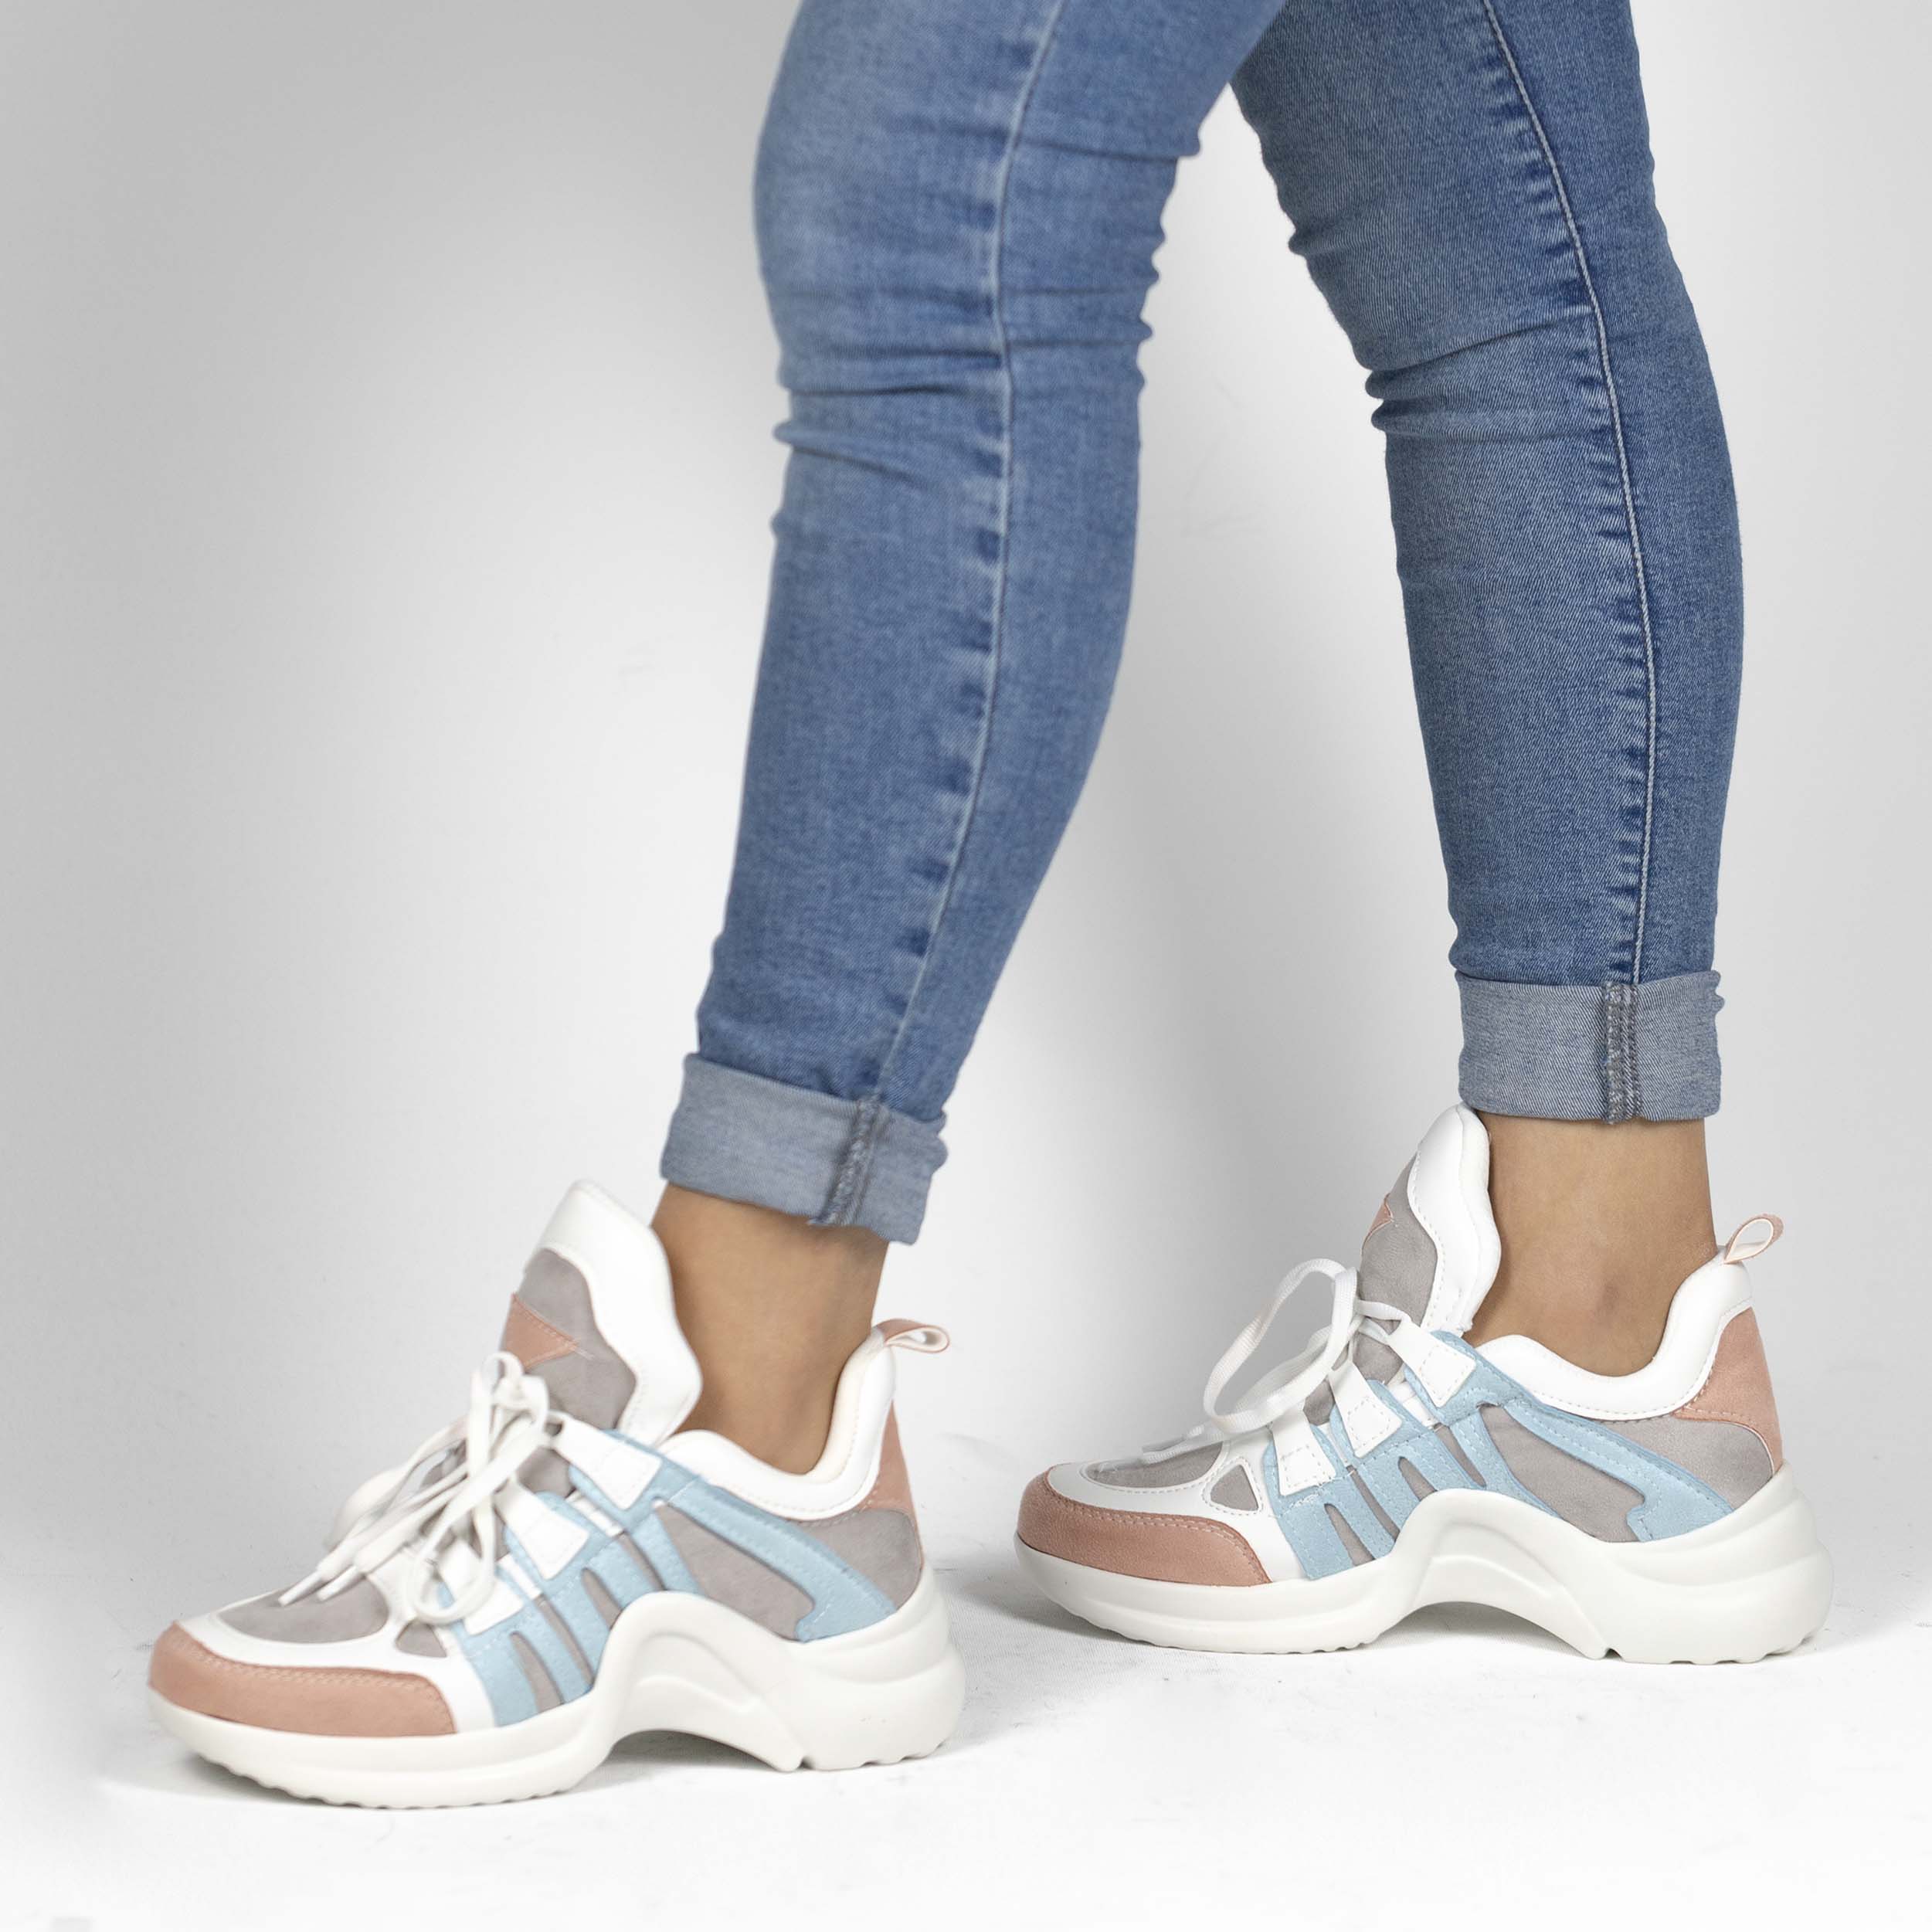 Kadın Kalın Tabanlı Spor Günlük Renkli Sneakers Ayakkabı, Renk: Beyaz - Mavi, Beden: 40